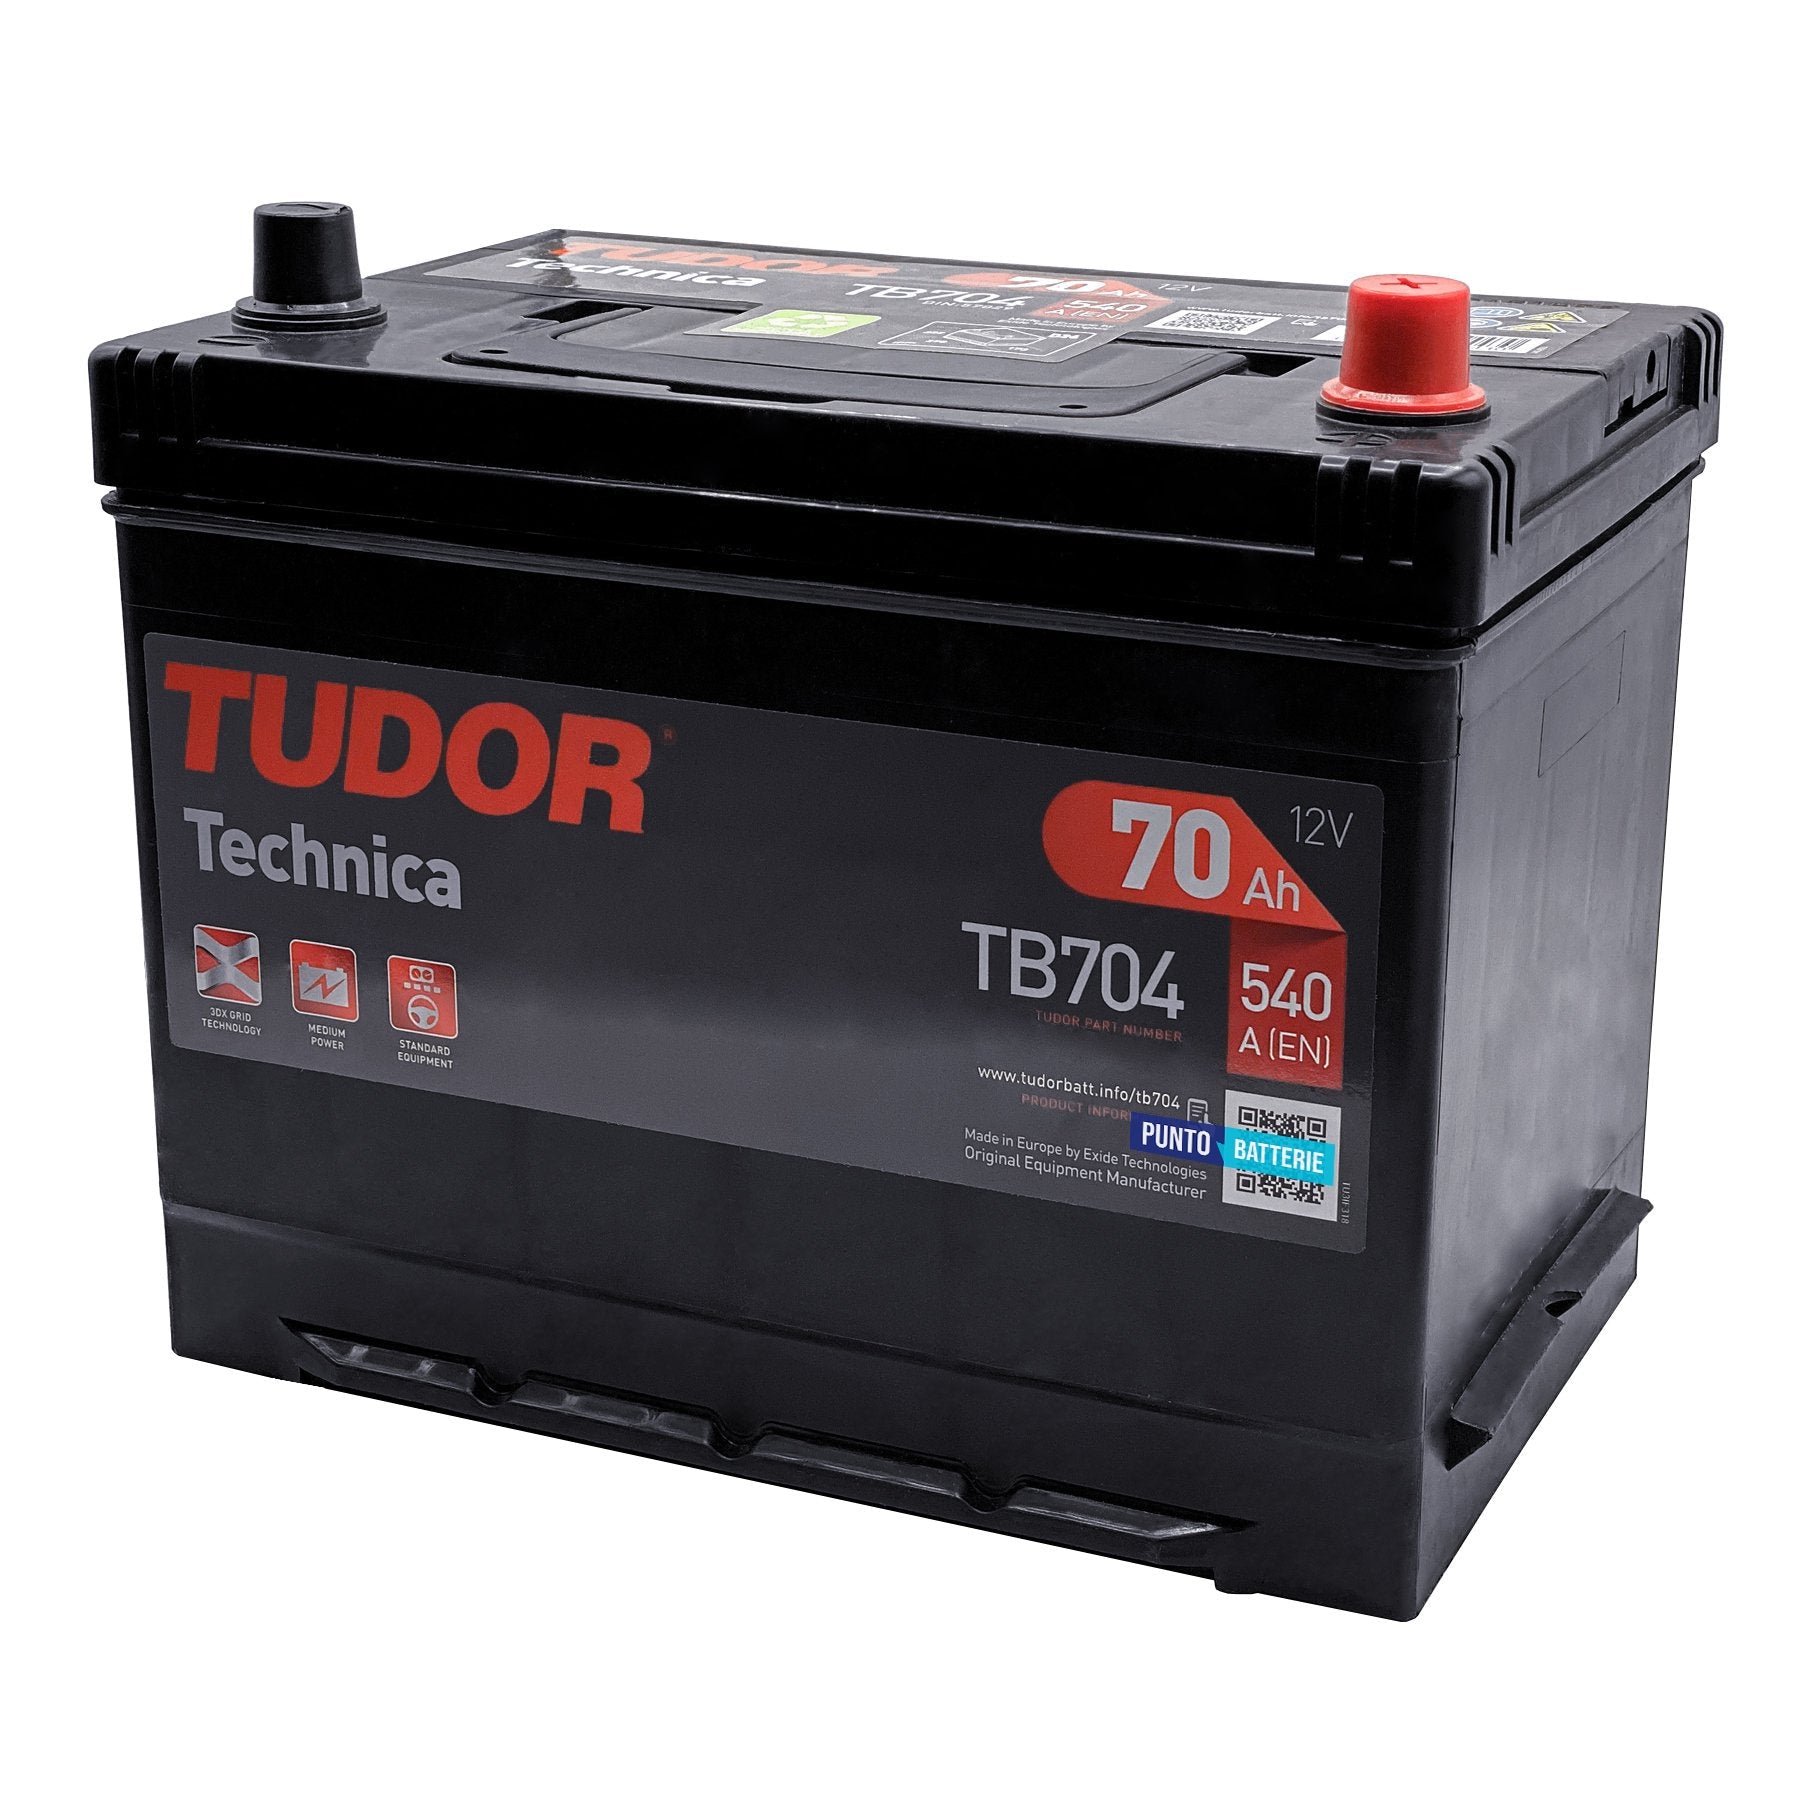 Batteria originale Tudor Technica TB704, dimensioni 270 x 173 x 222, polo positivo a destra, 12 volt, 70 amperora, 540 ampere. Batteria per auto e veicoli leggeri.